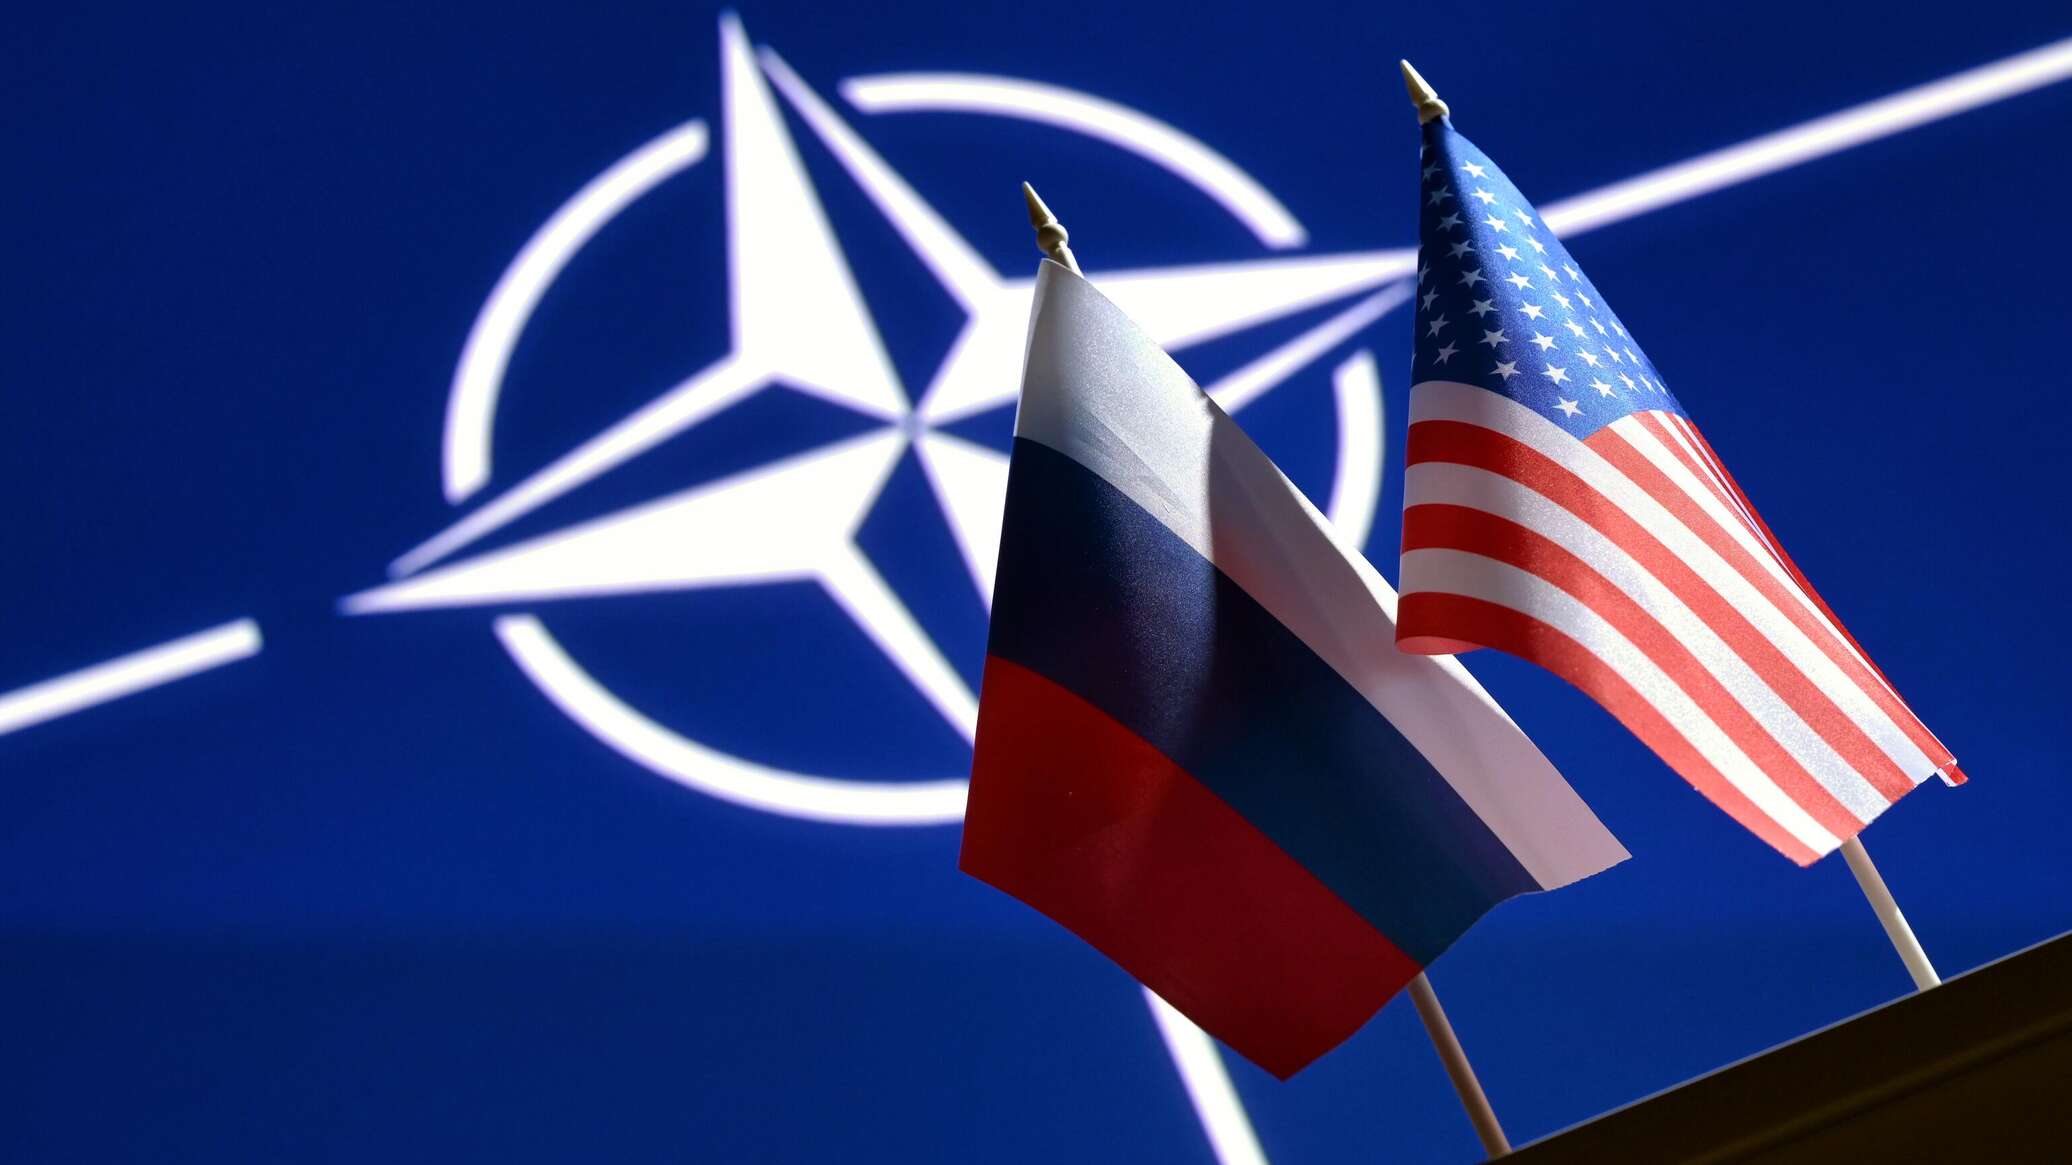 Нато готово к конфликту. Россия США НАТО. Флаг НАТО И России. США НАТО ЕС. Флаг NATO Украины и США.